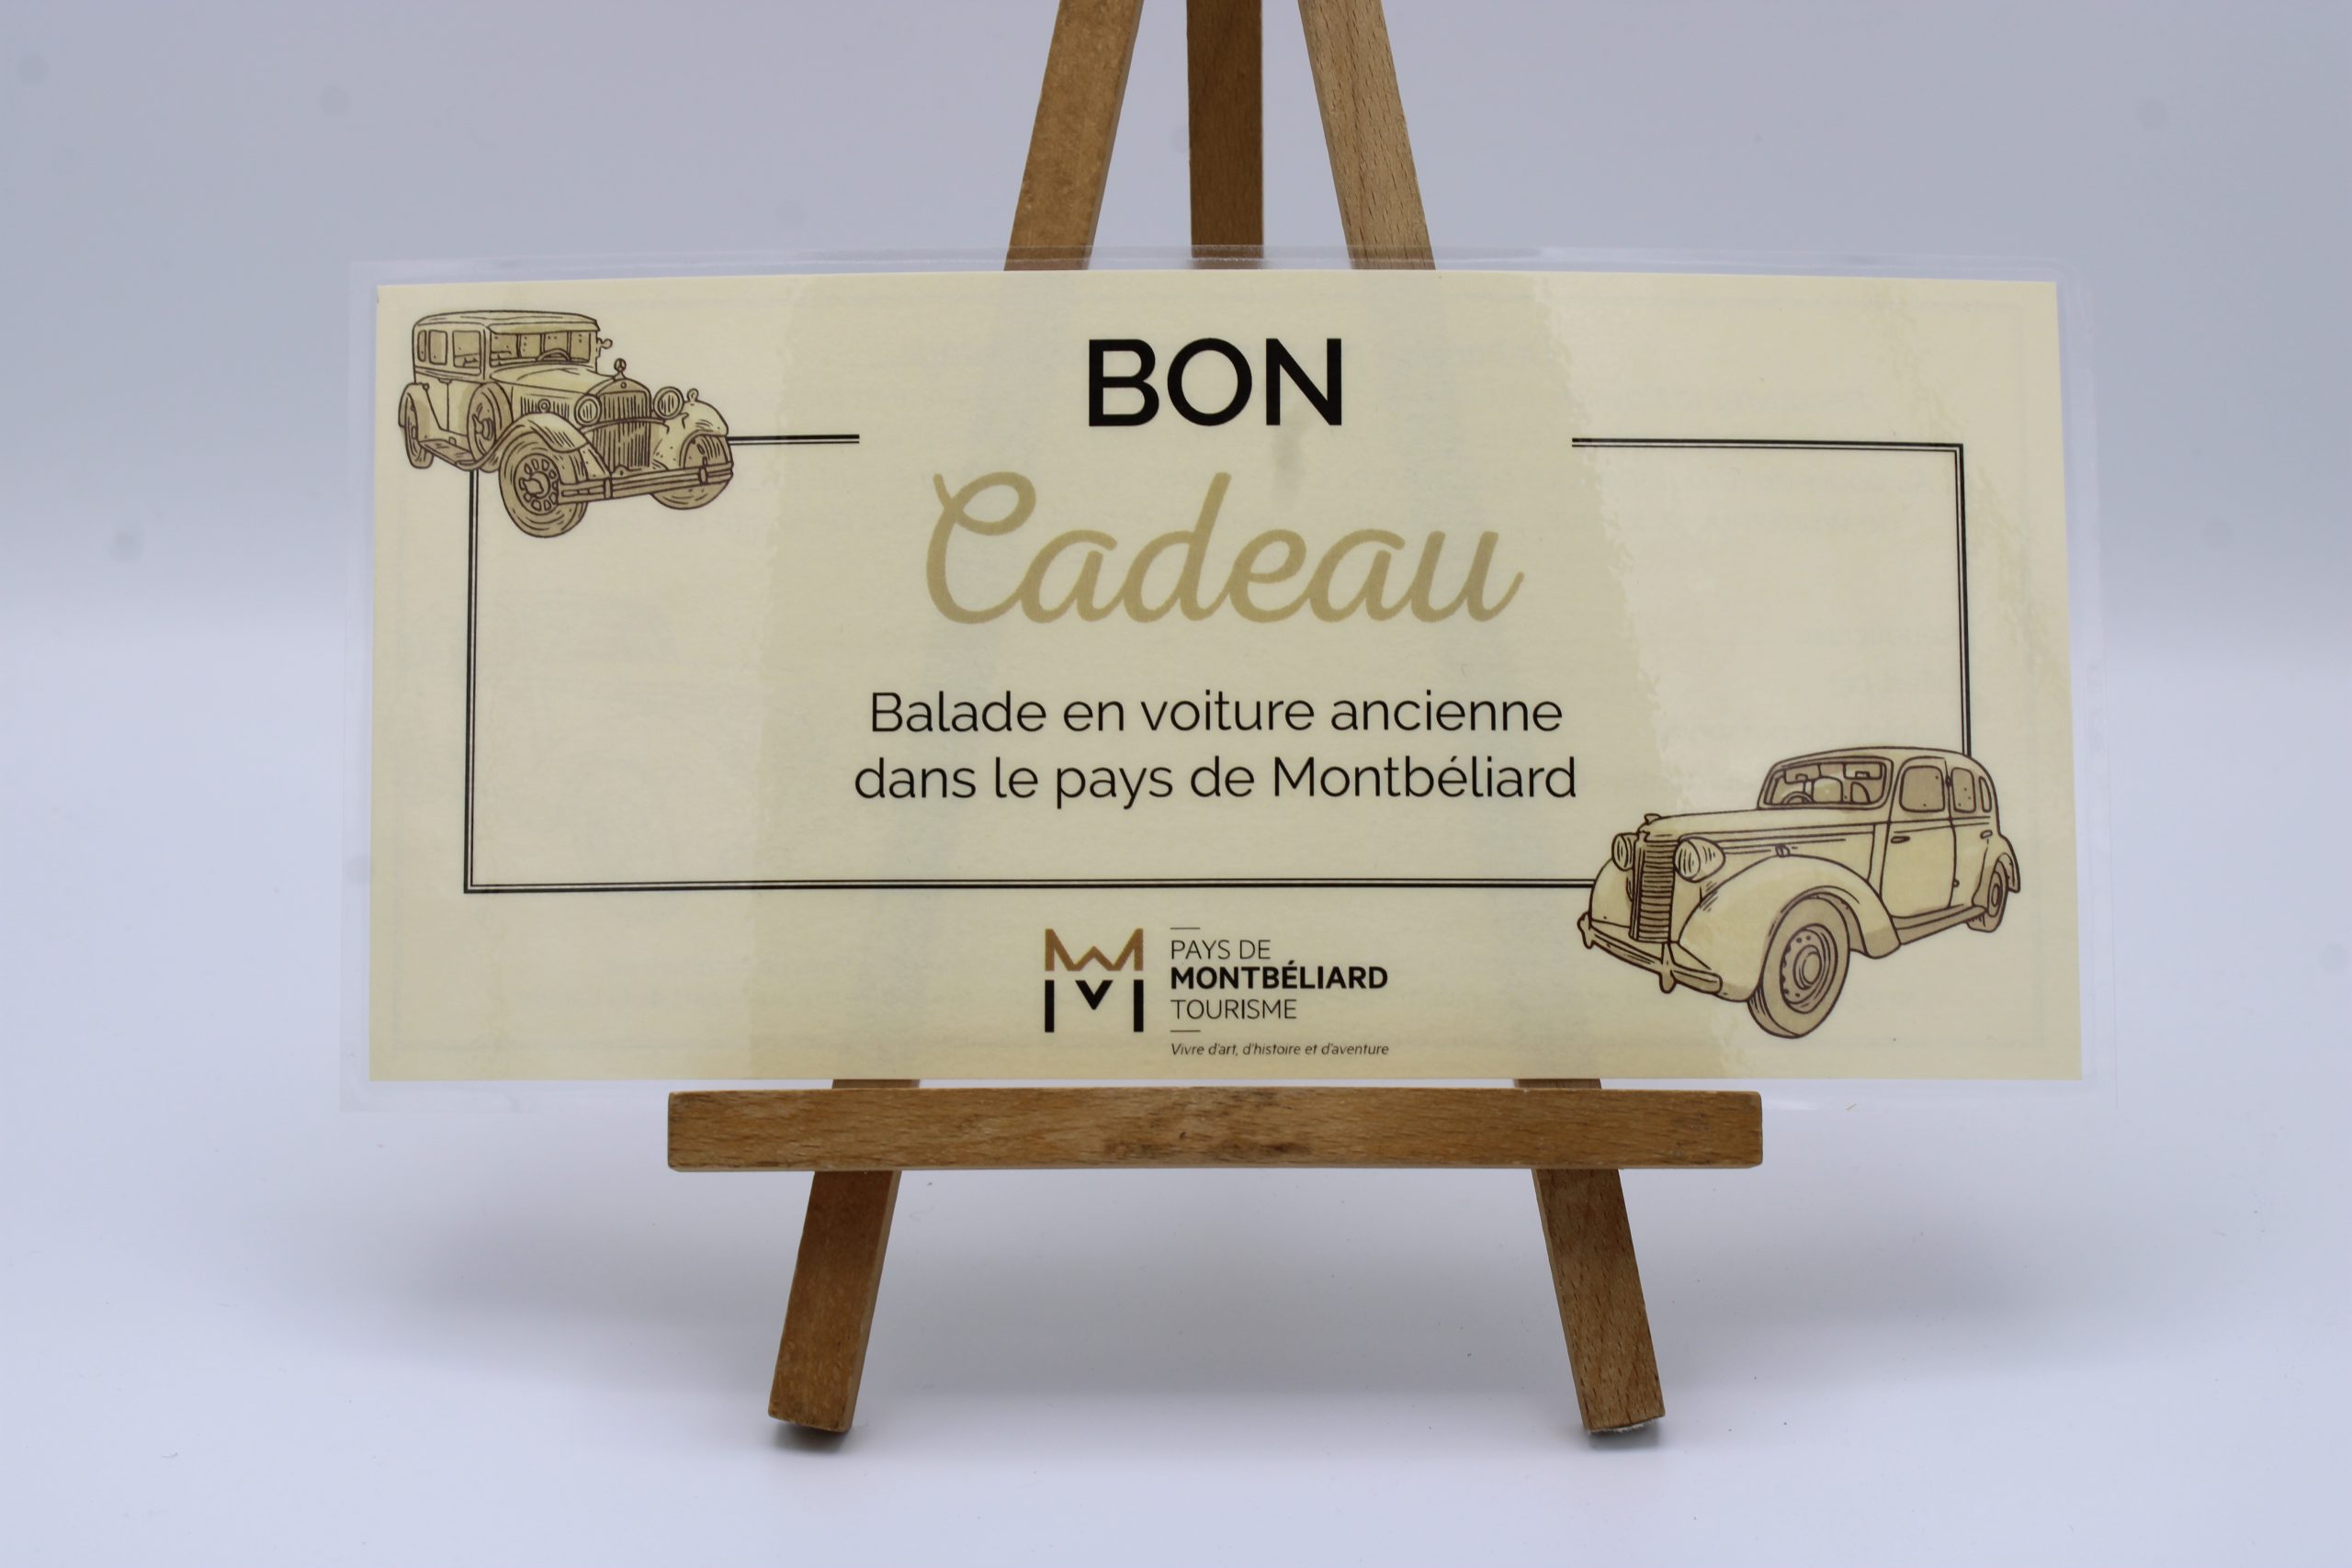 Bon cadeau - Balade en voiture ancienne - Boutique de l'Office de Tourisme  du Pays de Montbéliard